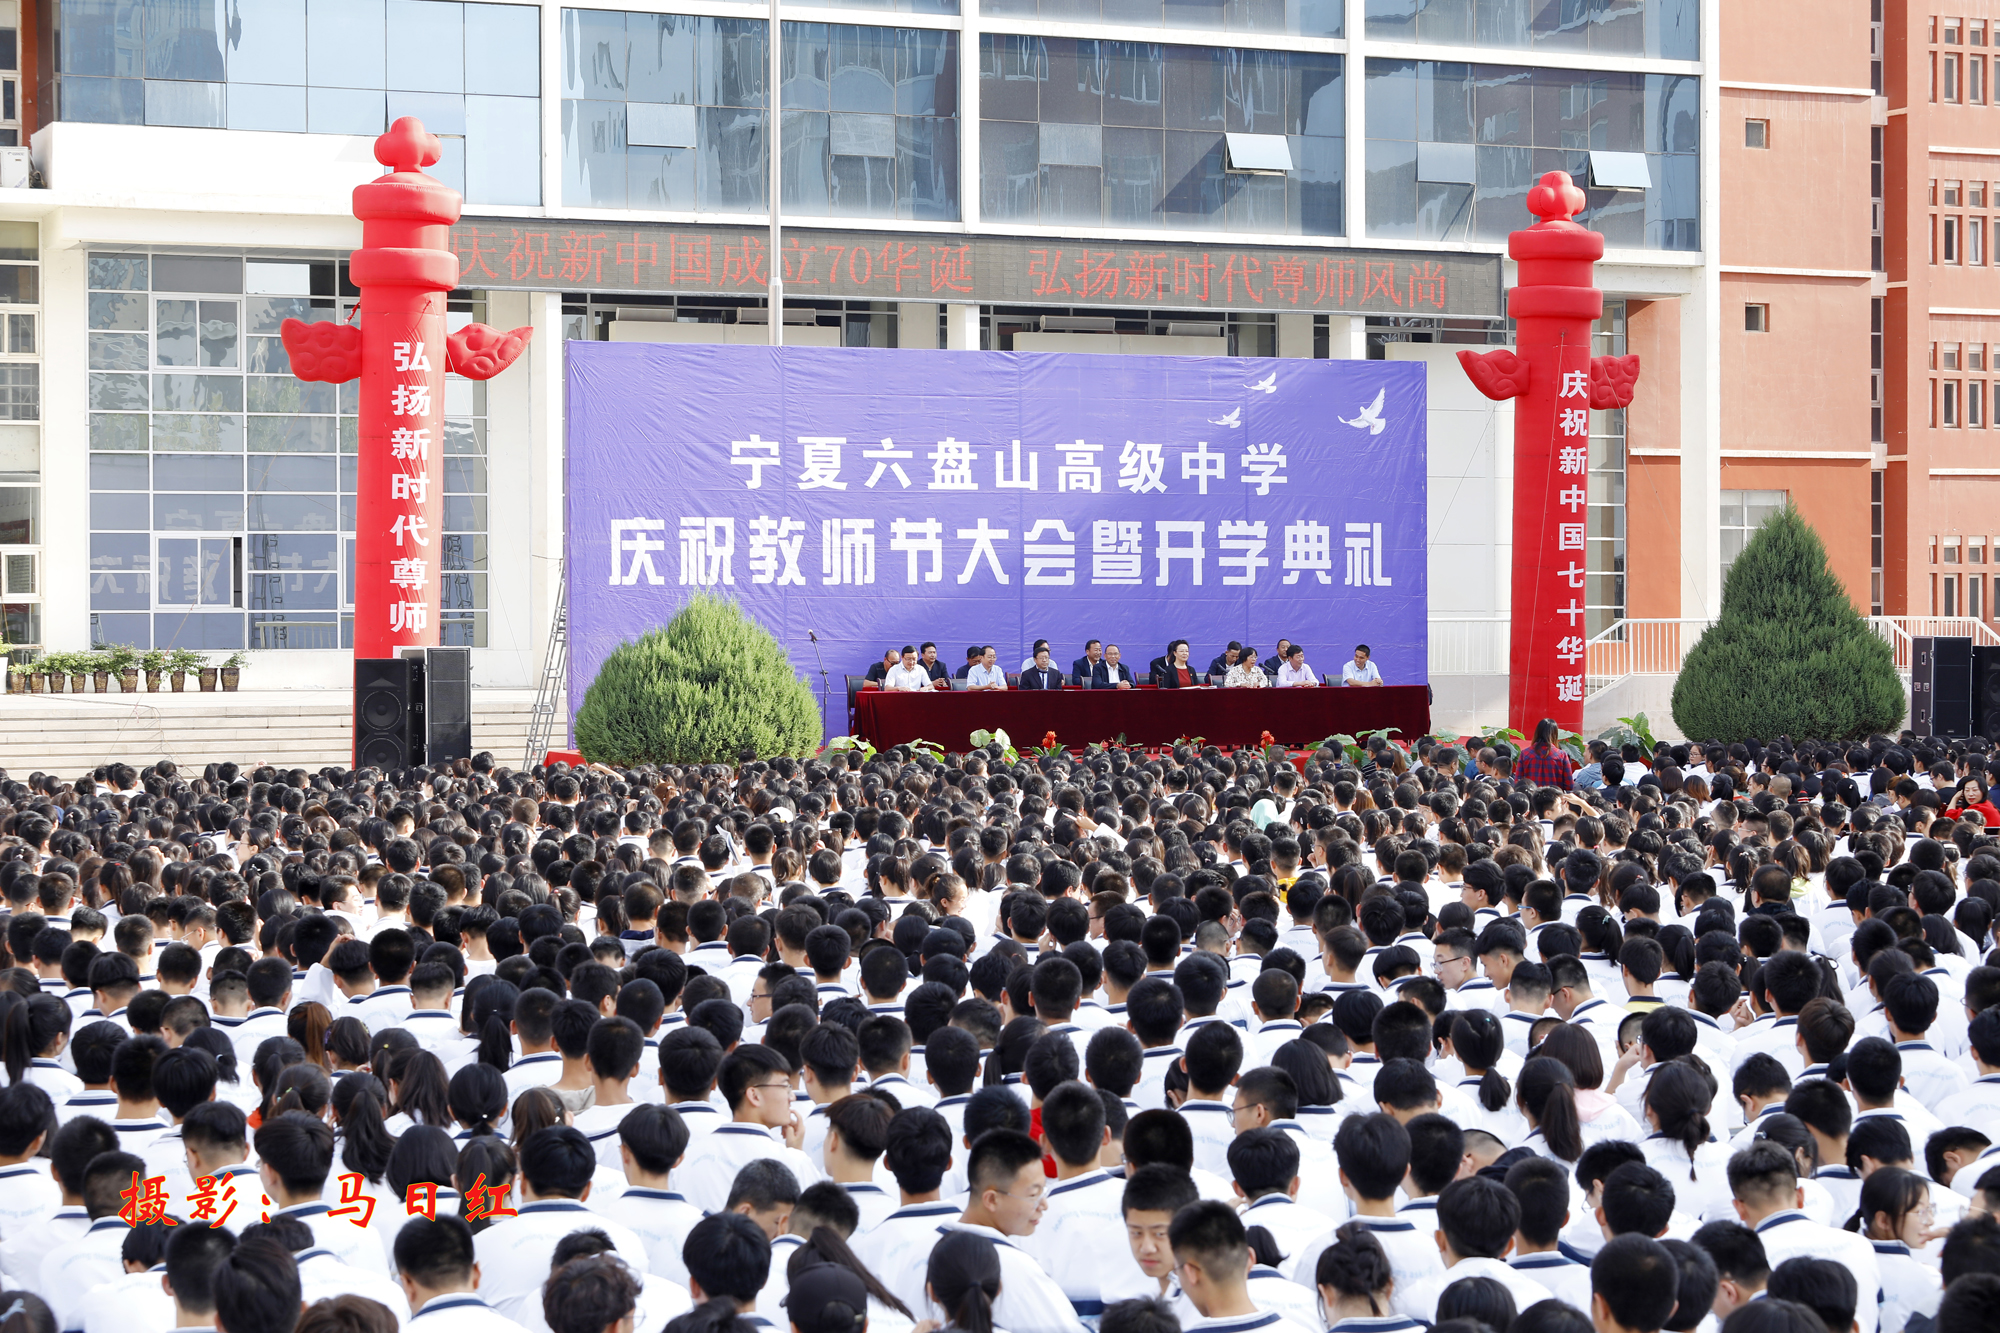 宁夏六盘山高级中学隆重举行庆祝教师节大会暨开学典礼